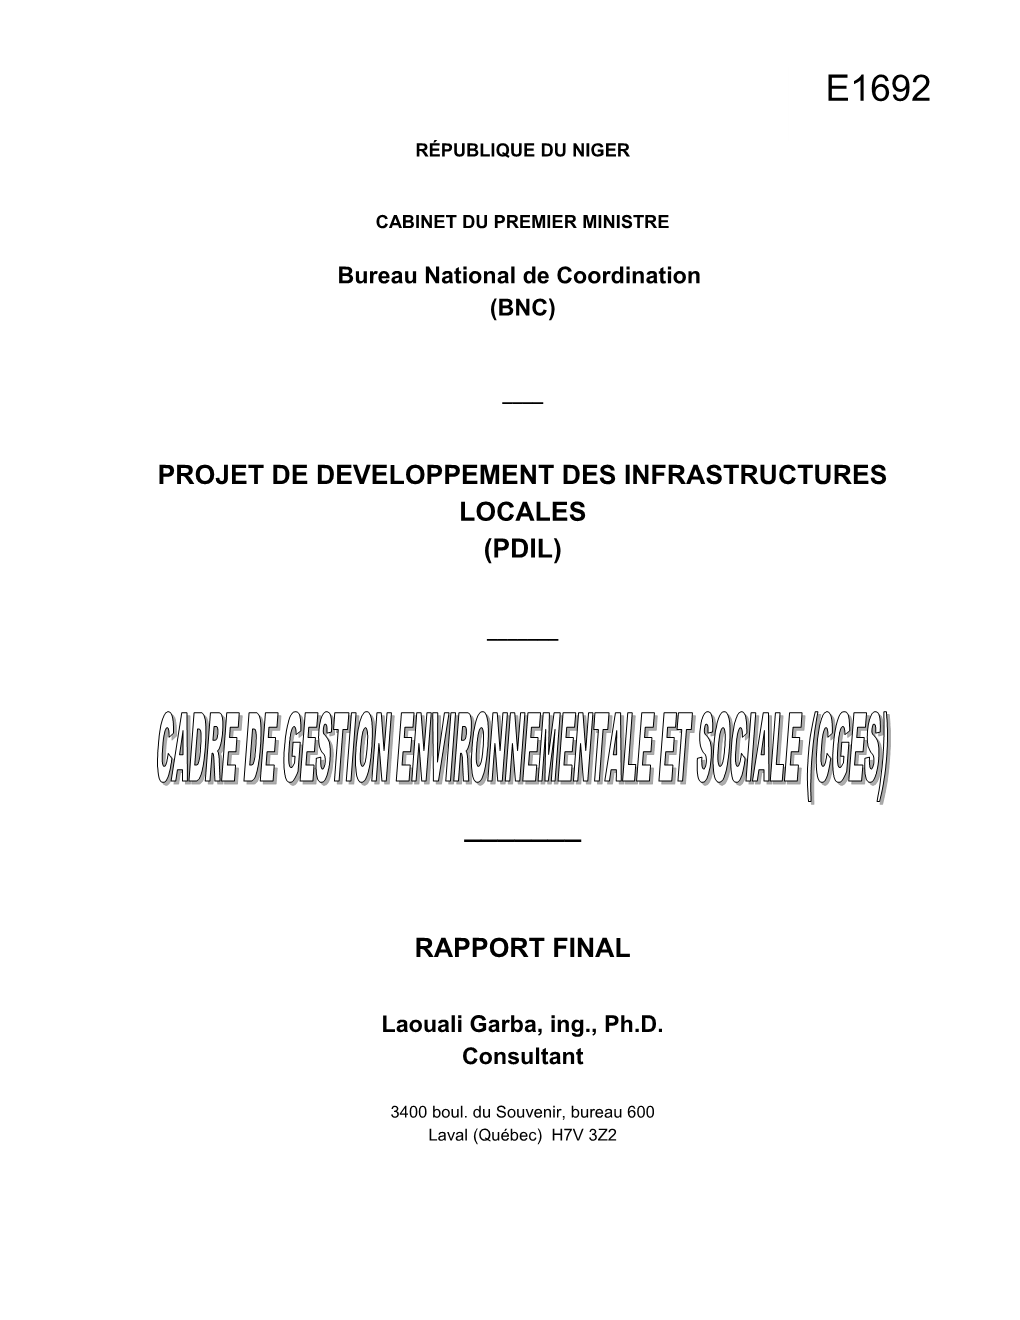 Projet De Developpement Des Infrastructures Locales